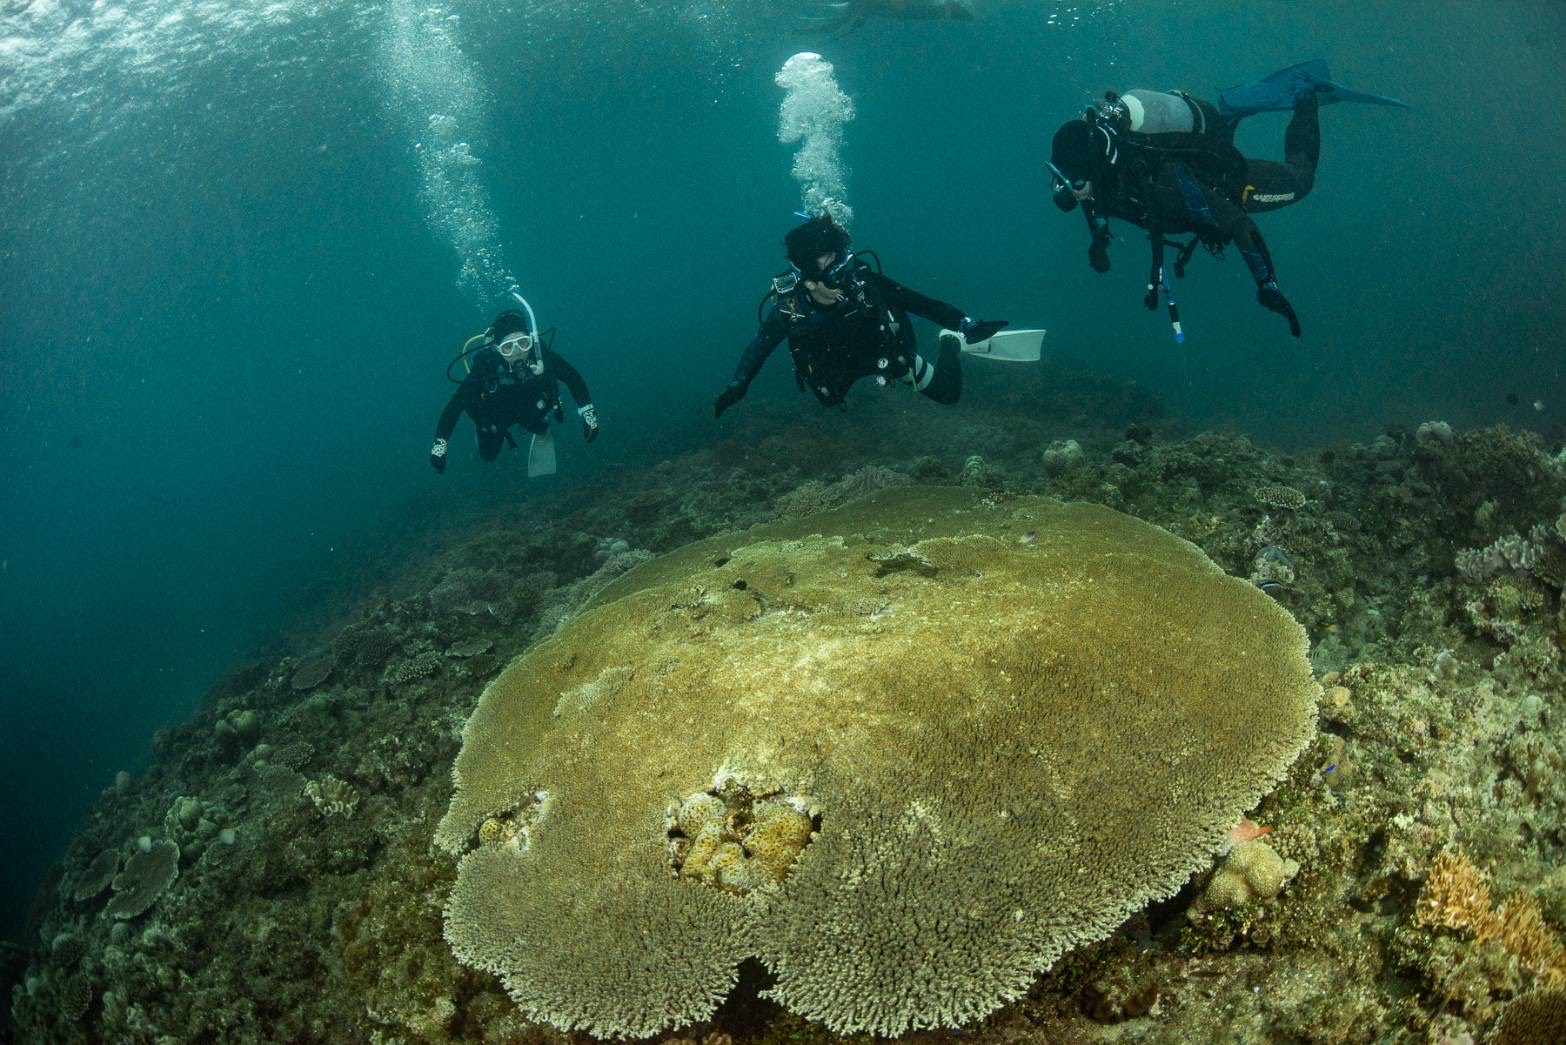 初めての沖縄ダイビングでは巨大なサンゴや広大なサンゴ礁に出会った
Photo by TWINS